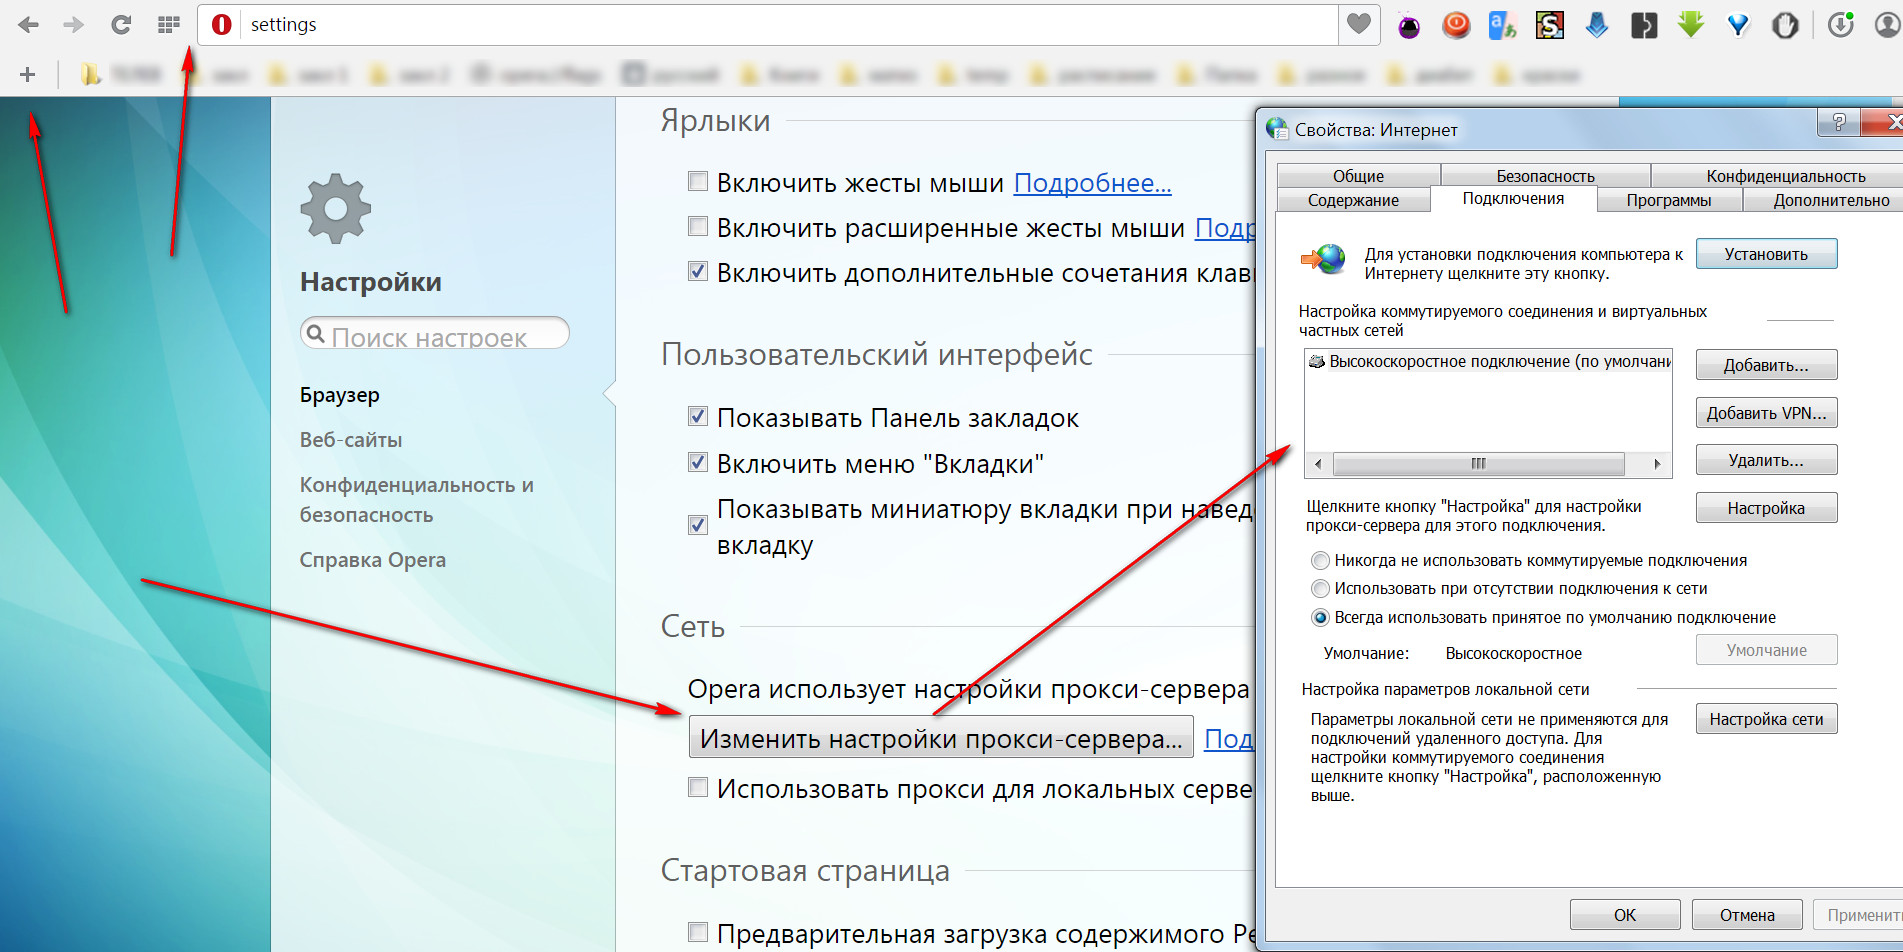 Включи широка 3. Где искать настройки Алисы. Настройка поиска в Яндексе на телефоне. Включите все языковые версии программы, присутствующие в сети. ESET. Как включить прокси графику в автокаде.